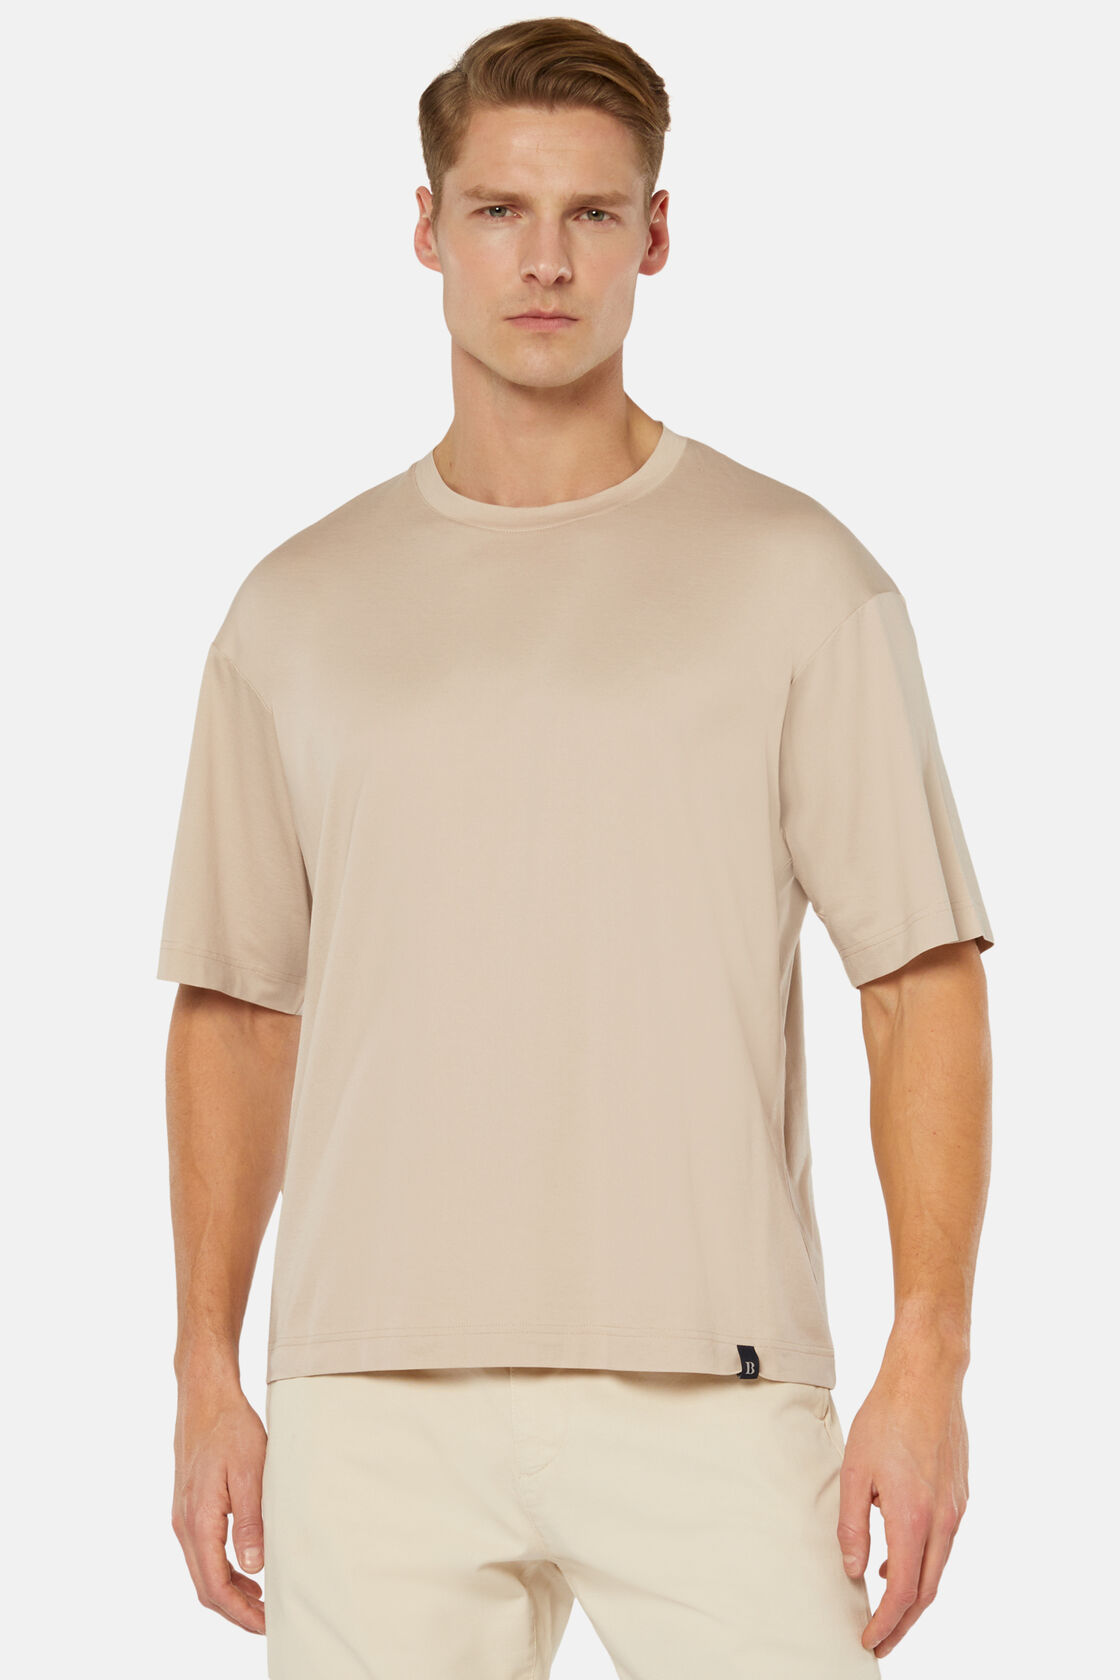 Hochwertiges Jersy-T-Shirt, Beige, hi-res